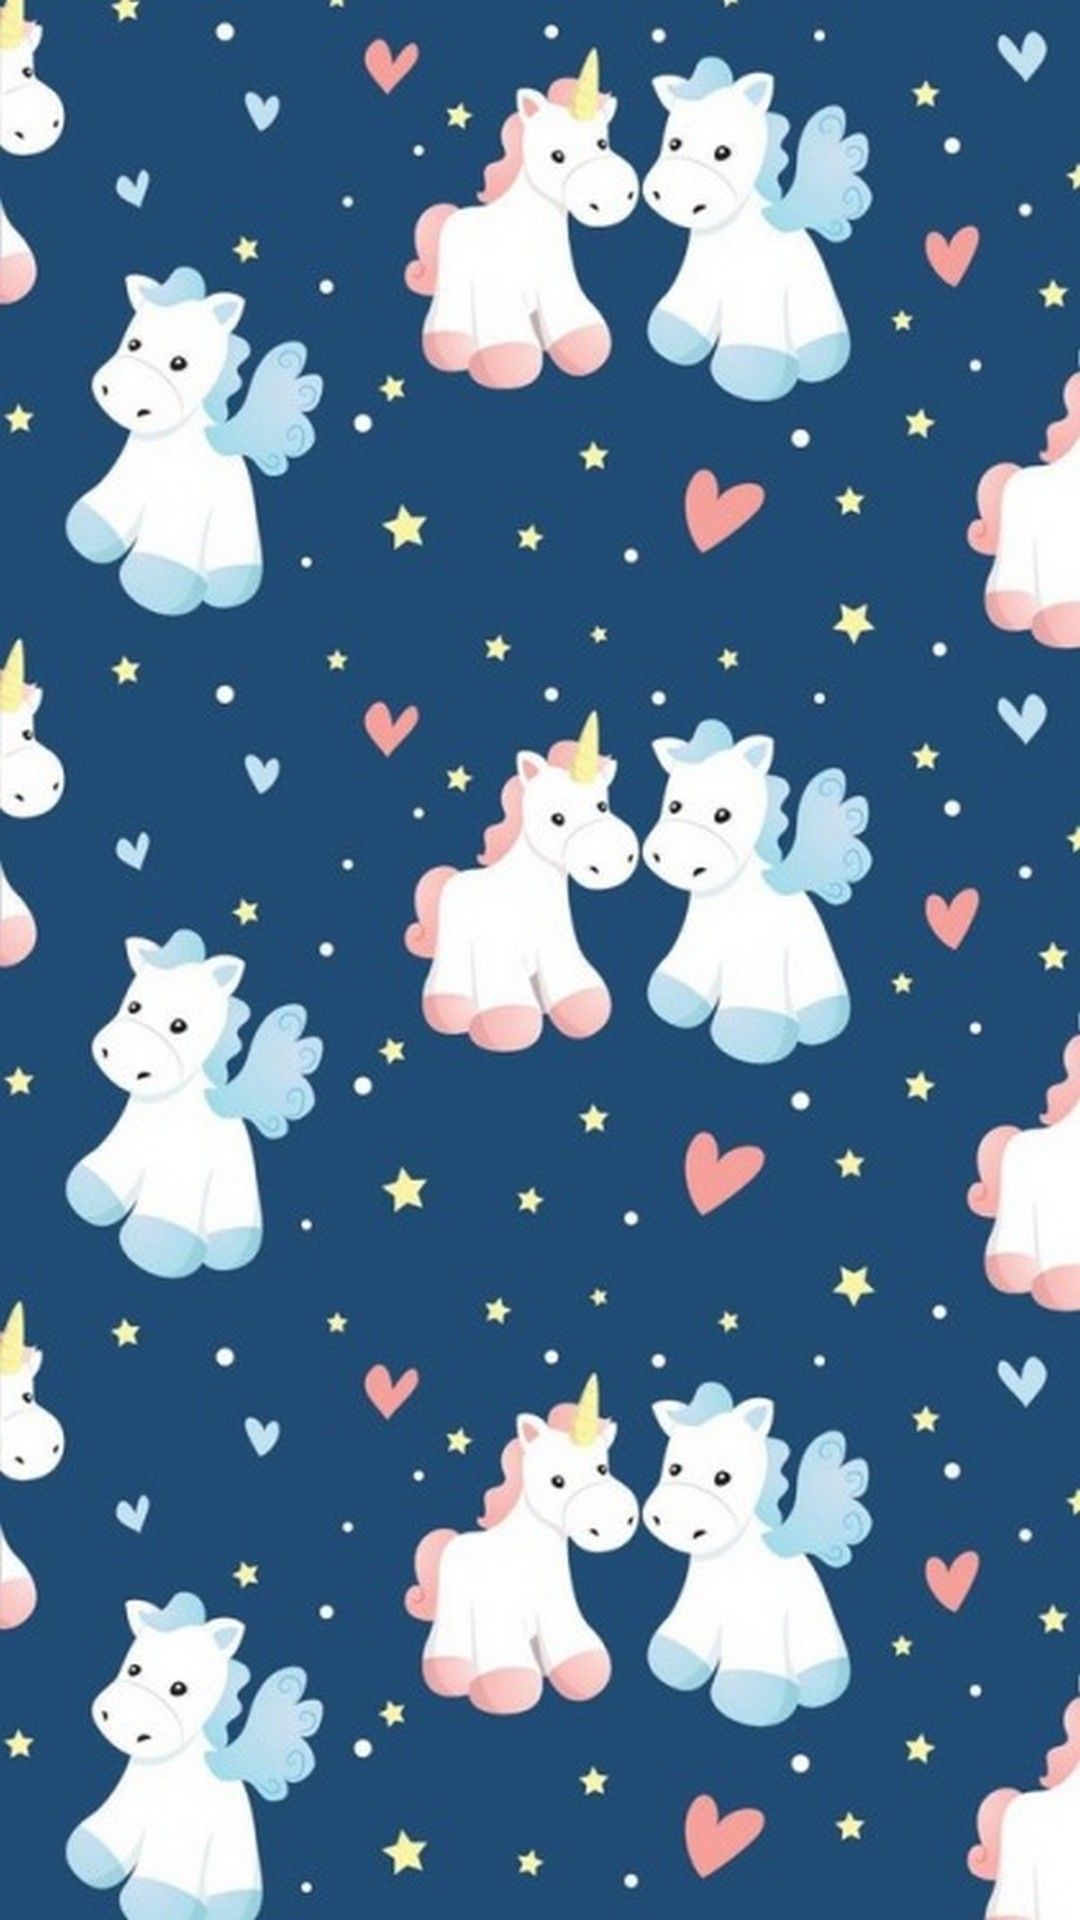 Seamless pattern with cute unicorns and hearts - Unicorn